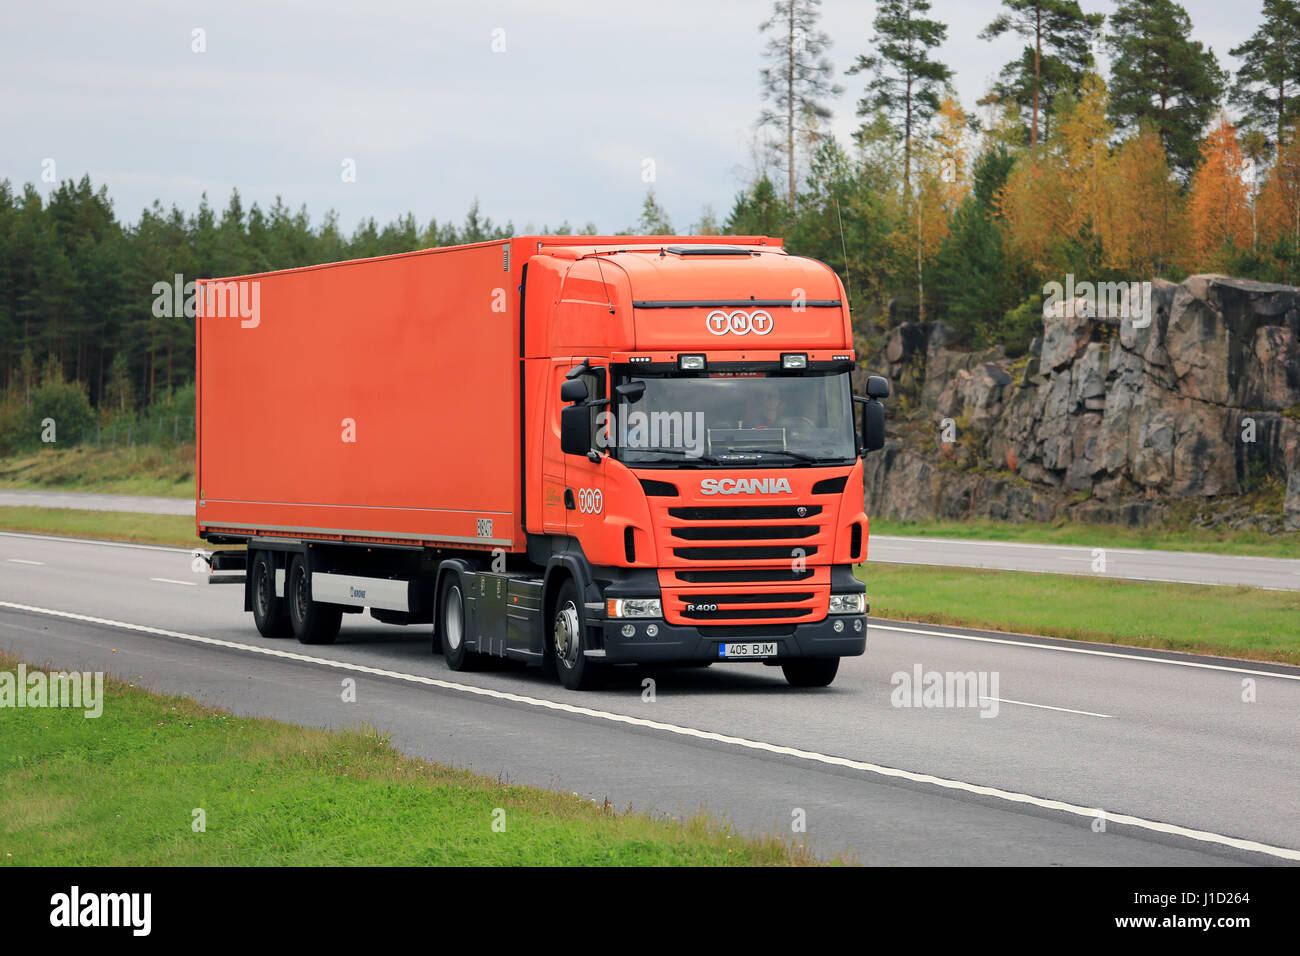 PAIMIO, Finlandia - 23 de septiembre de 2016: Naranja Scania R400 semi camión de carga de TNT se mueve a lo largo de la autopista en un día nublado de otoño en el sur de Finlandia. Foto de stock